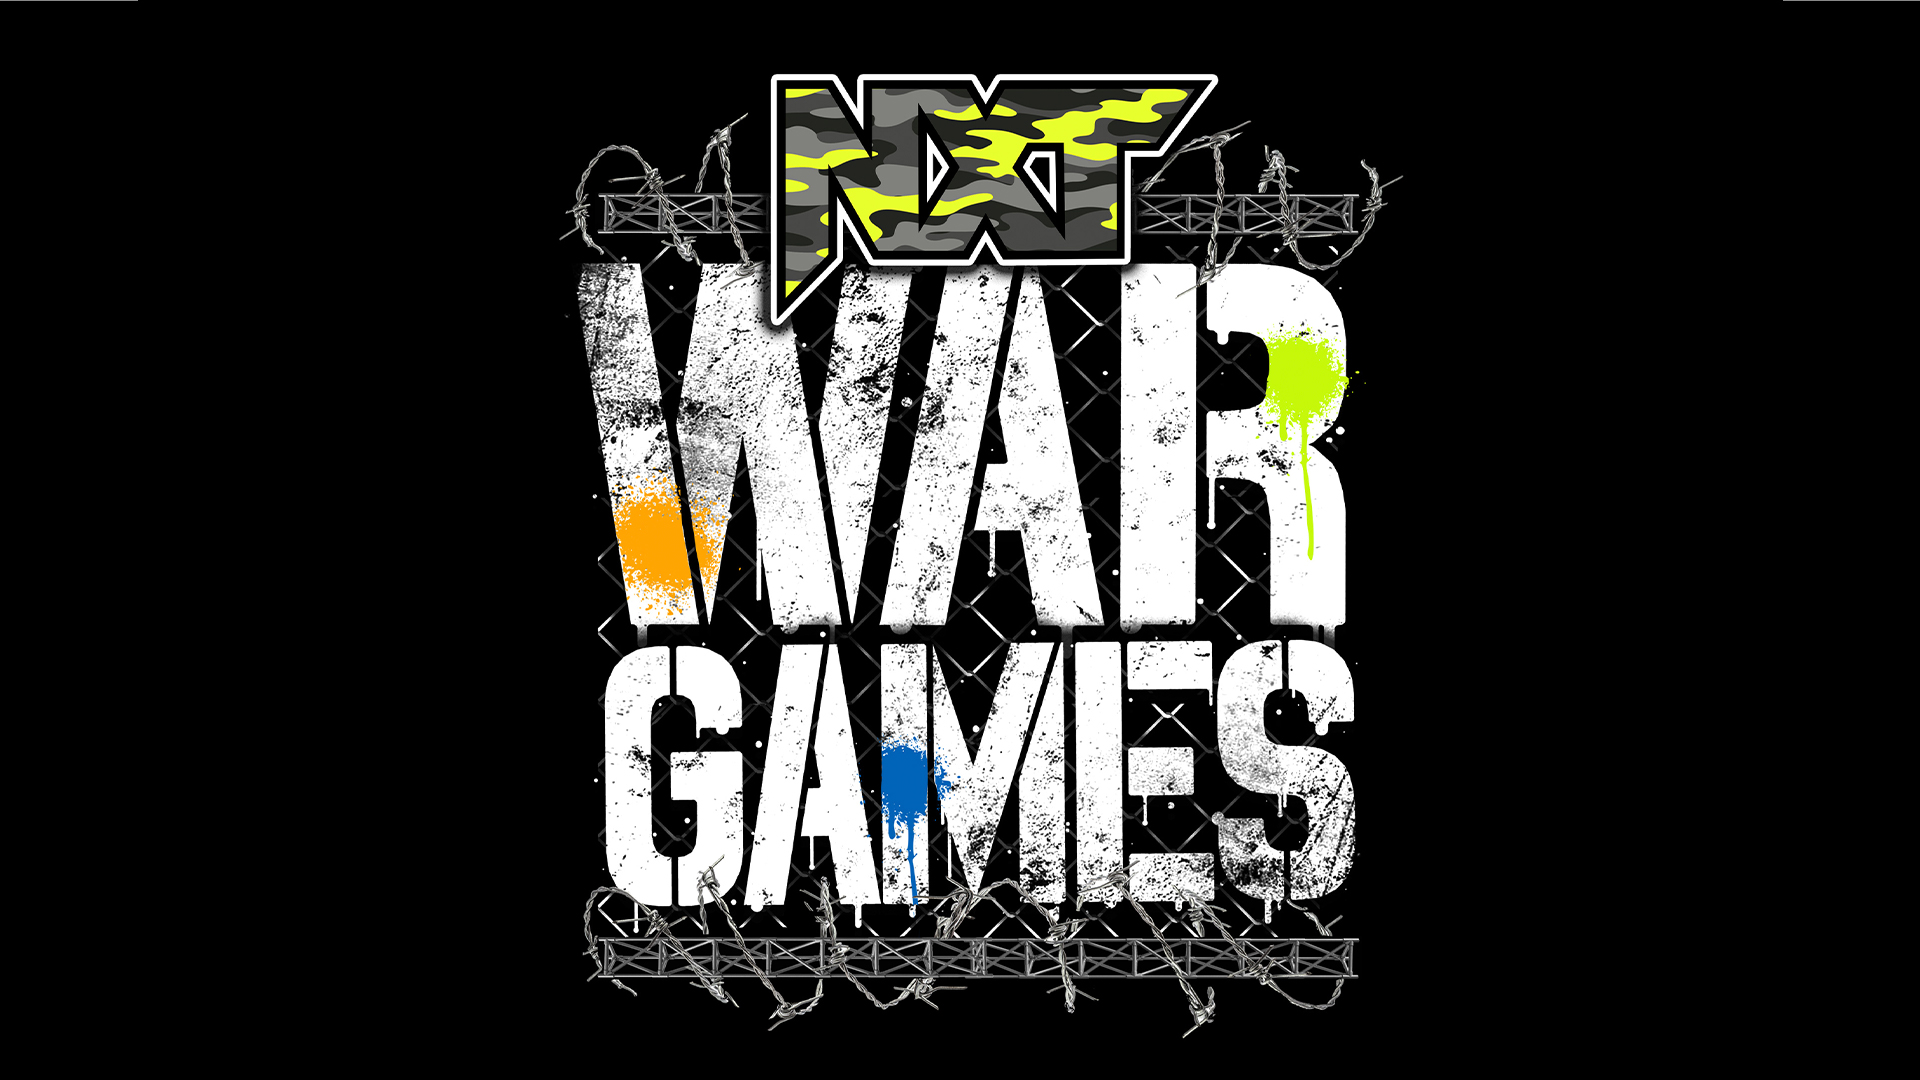 wwe nxt war games 2021